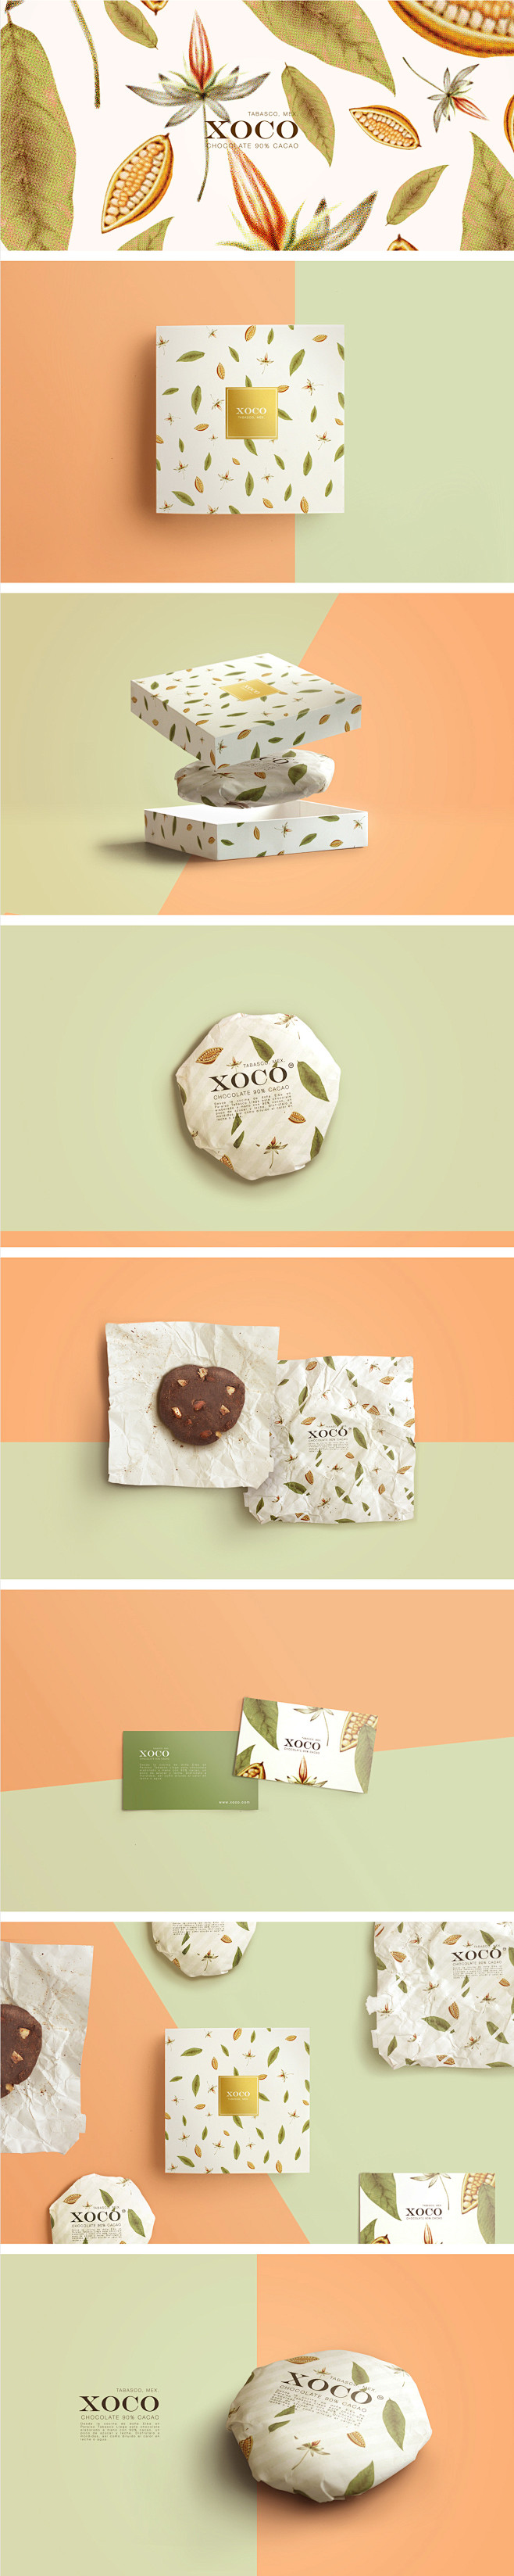 墨西哥 XOCO 巧克力包装设计XOCO...